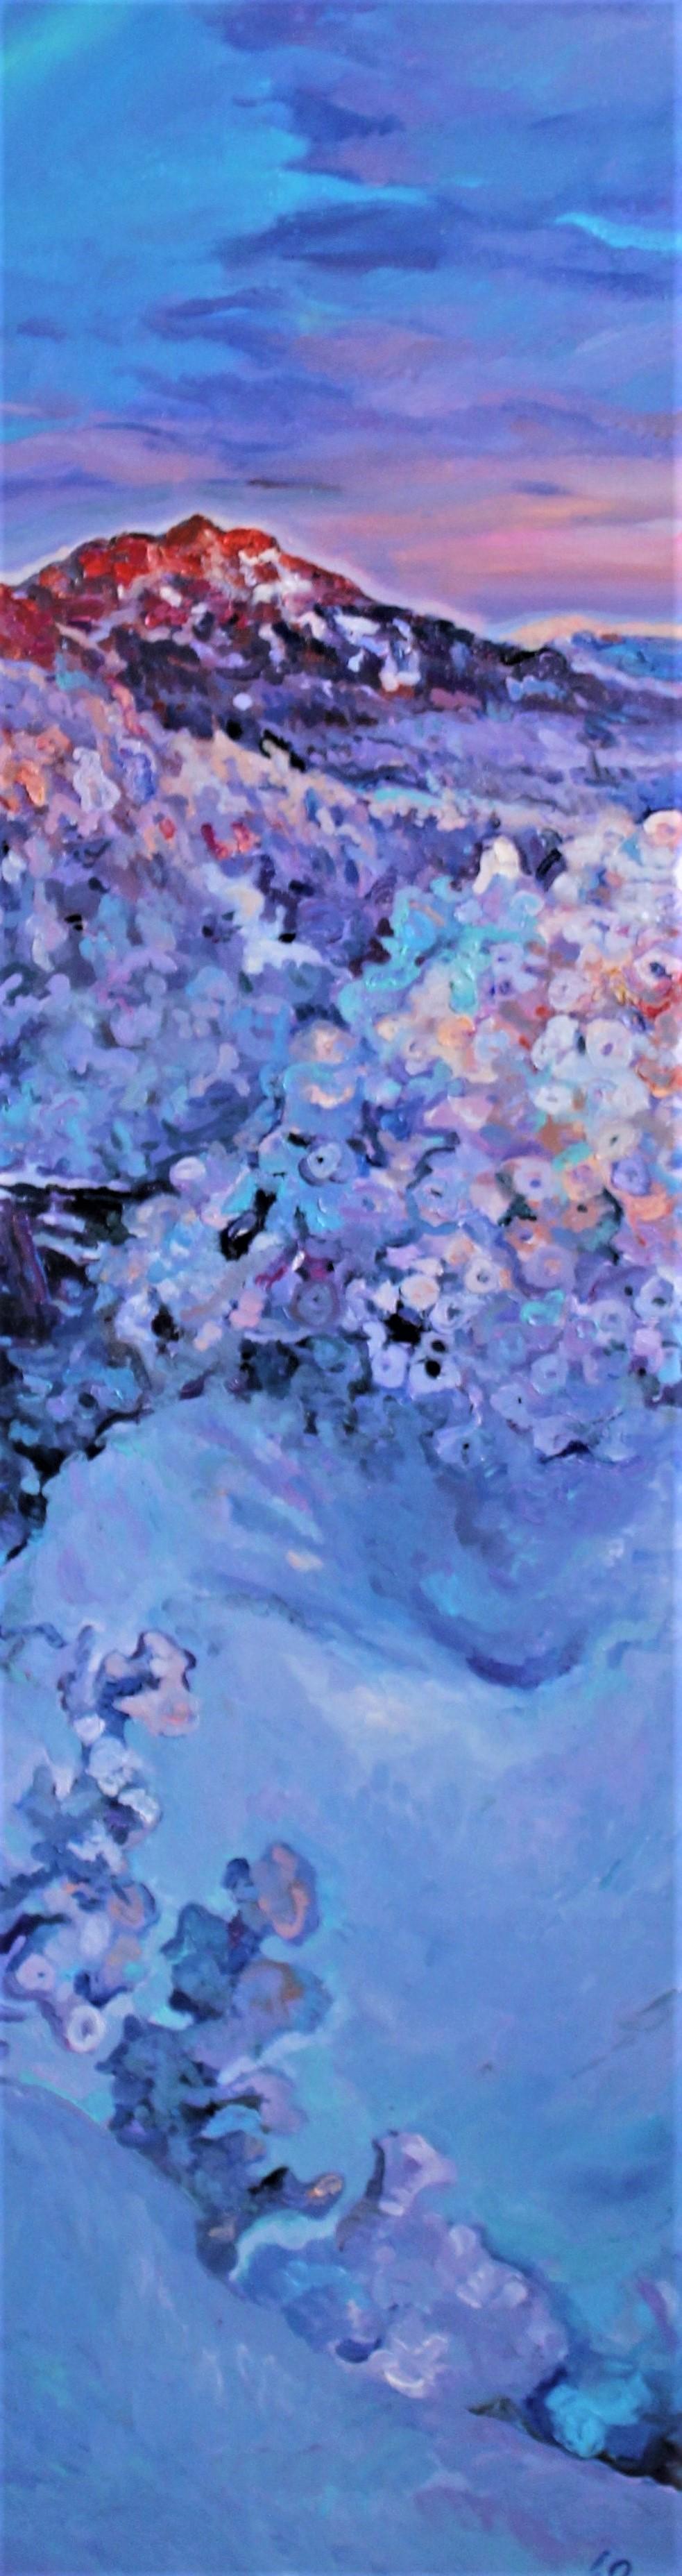 Landscape Painting Elena Georgieva - Cherries d'hiver - Peinture à l'huile couleur blanc, jaune, bleu, violet et rouge